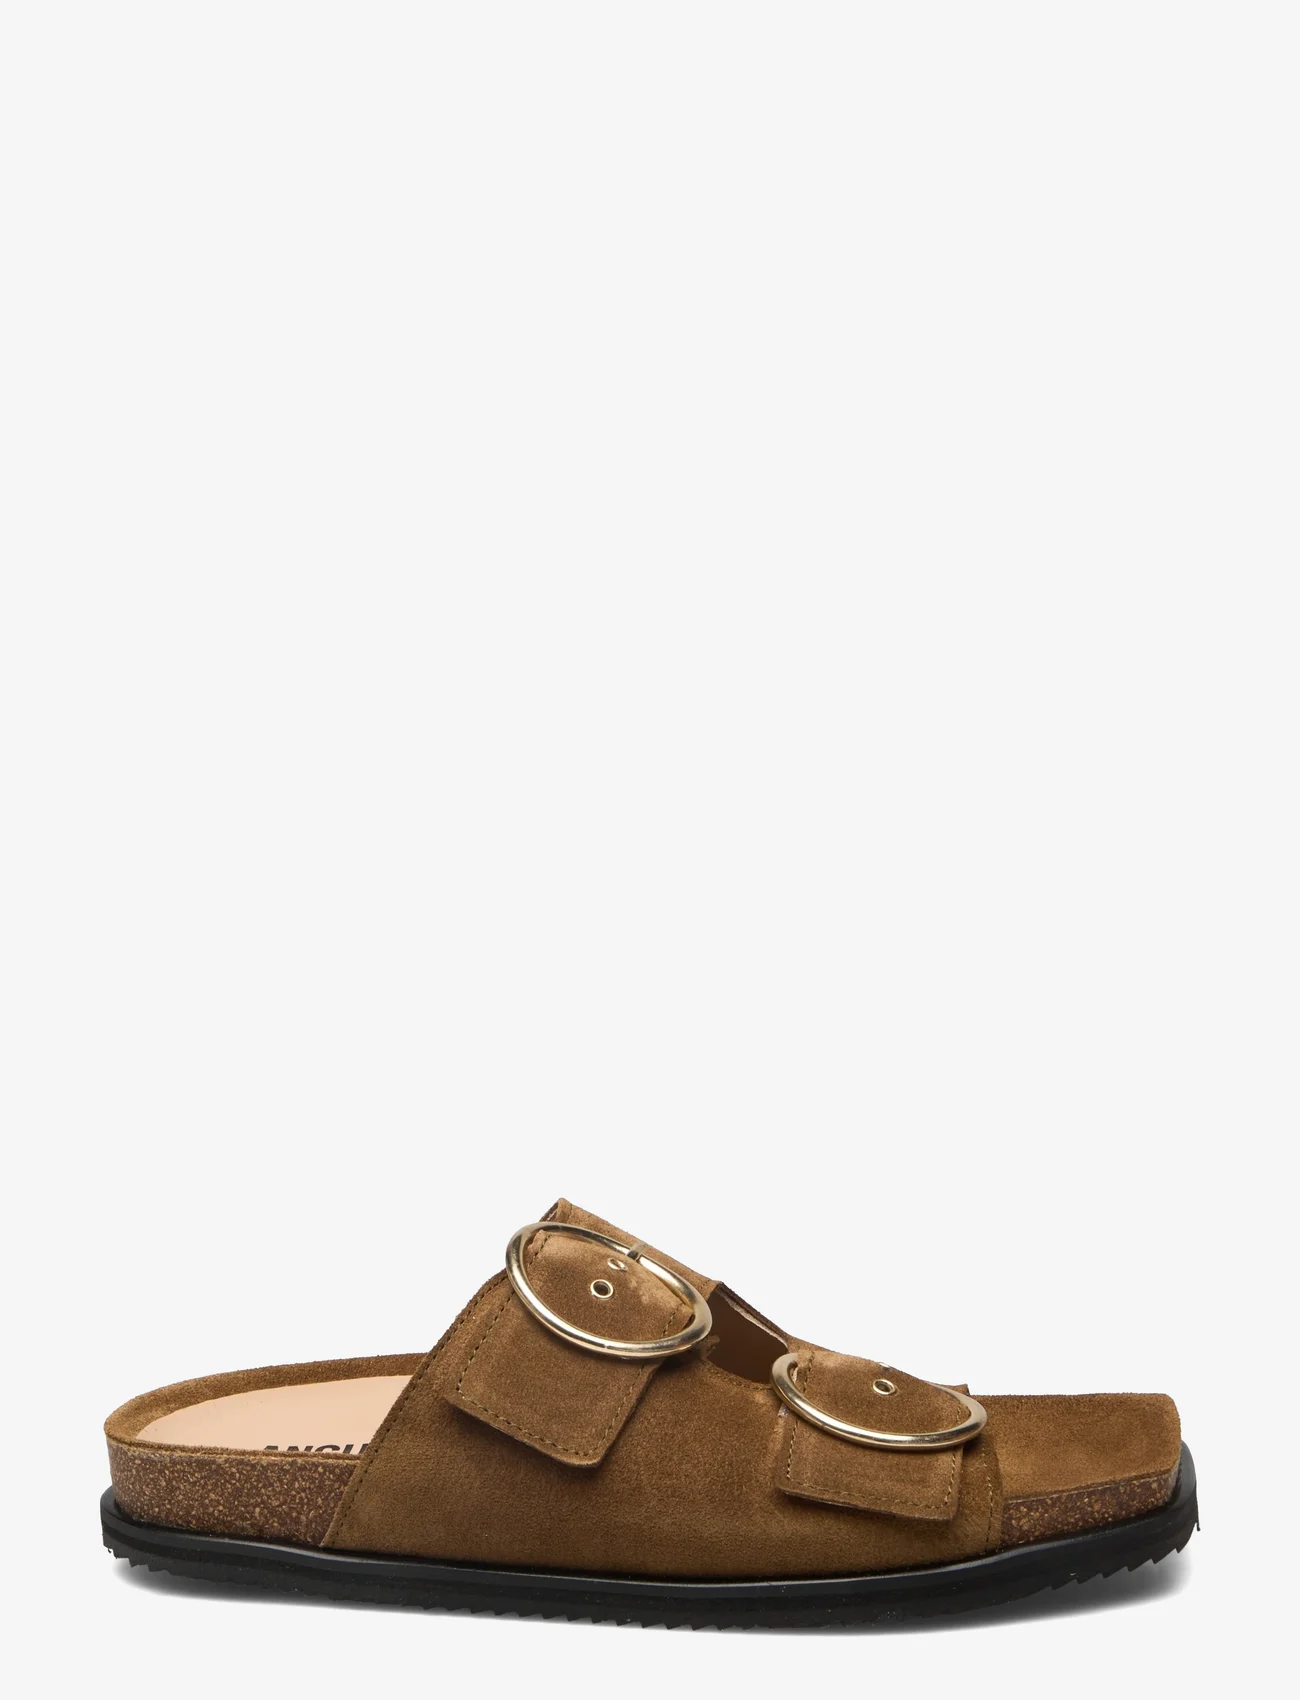 ANGULUS - Sandals - flat - open toe - op - flat sandals - 2209 mustard - 1